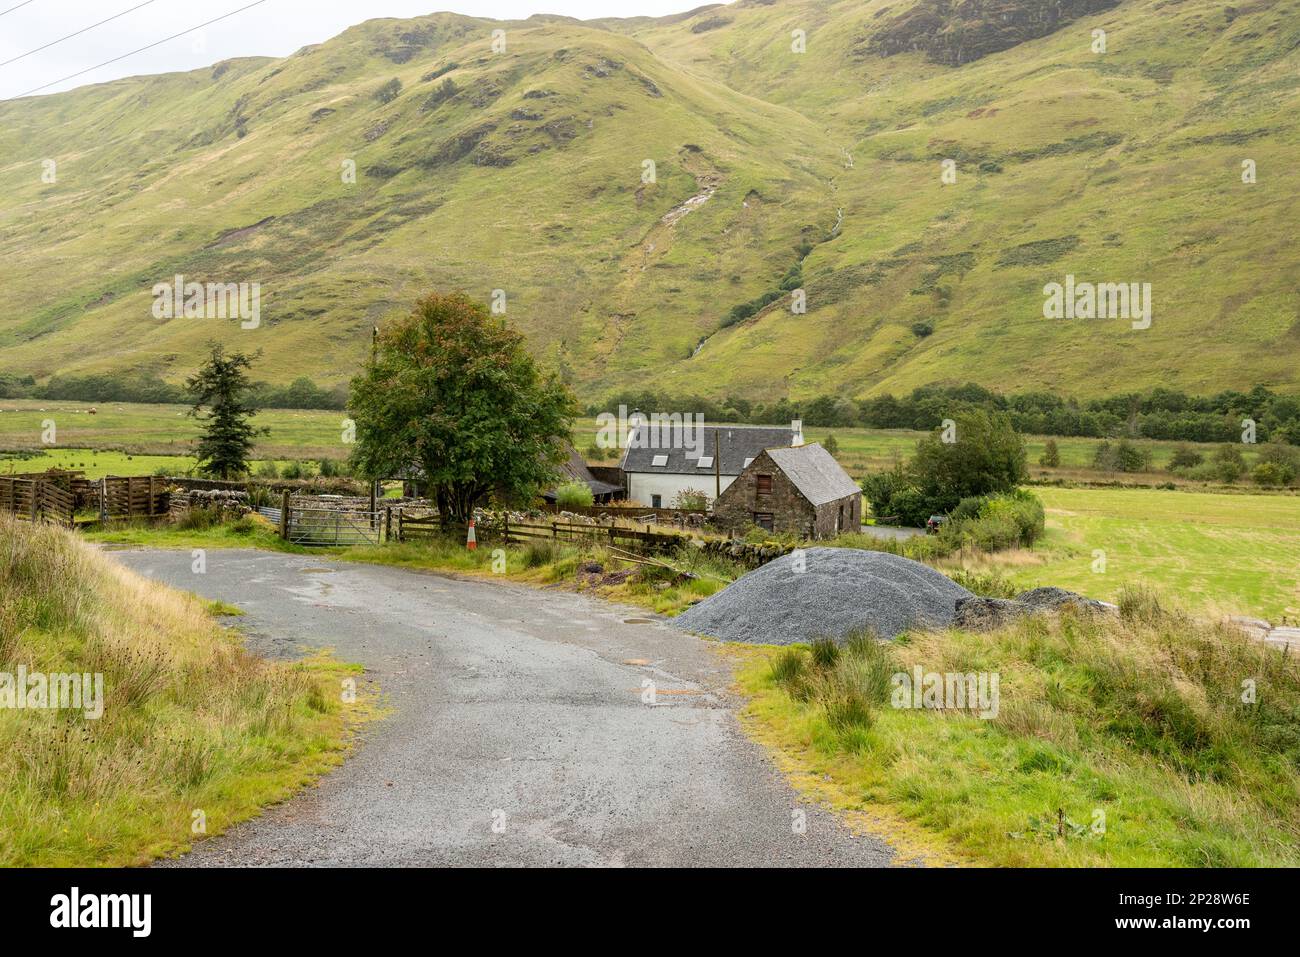 Route de la ferme dans les Highlands écossais Banque D'Images